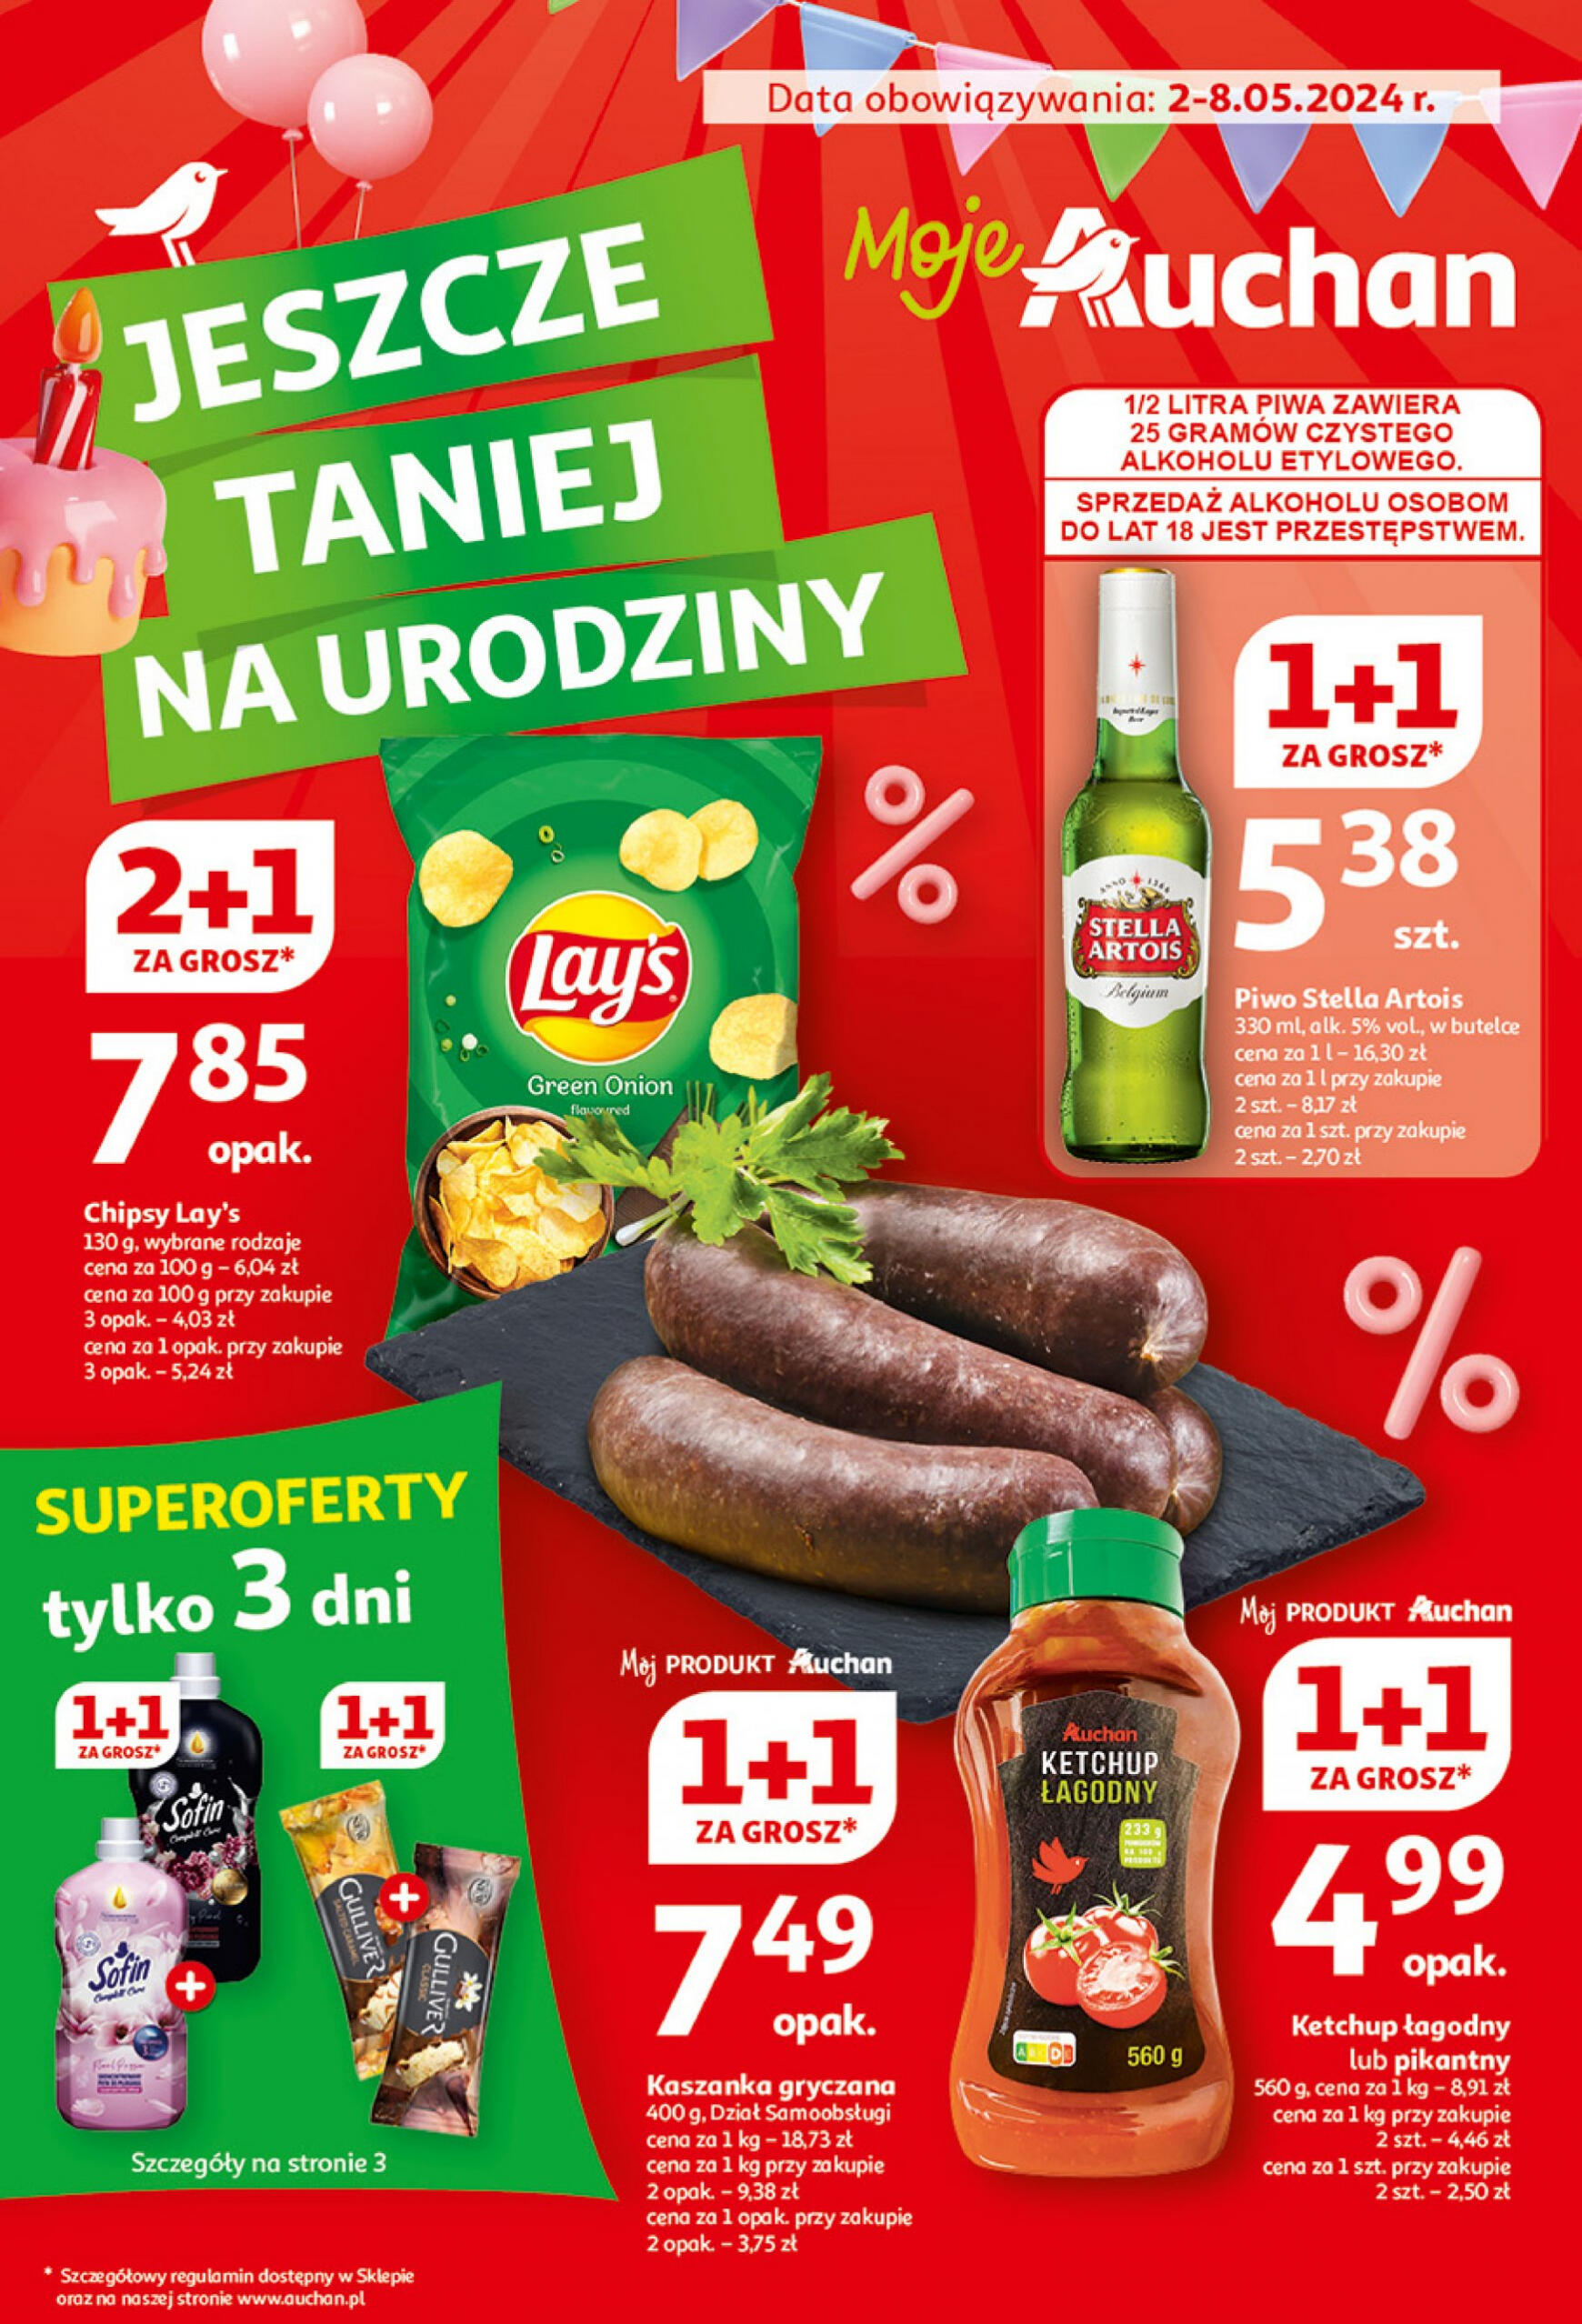 auchan - Moje Auchan - Gazetka Jeszcze taniej na urodziny gazetka aktualna ważna od 02.05. - 08.05. - page: 1